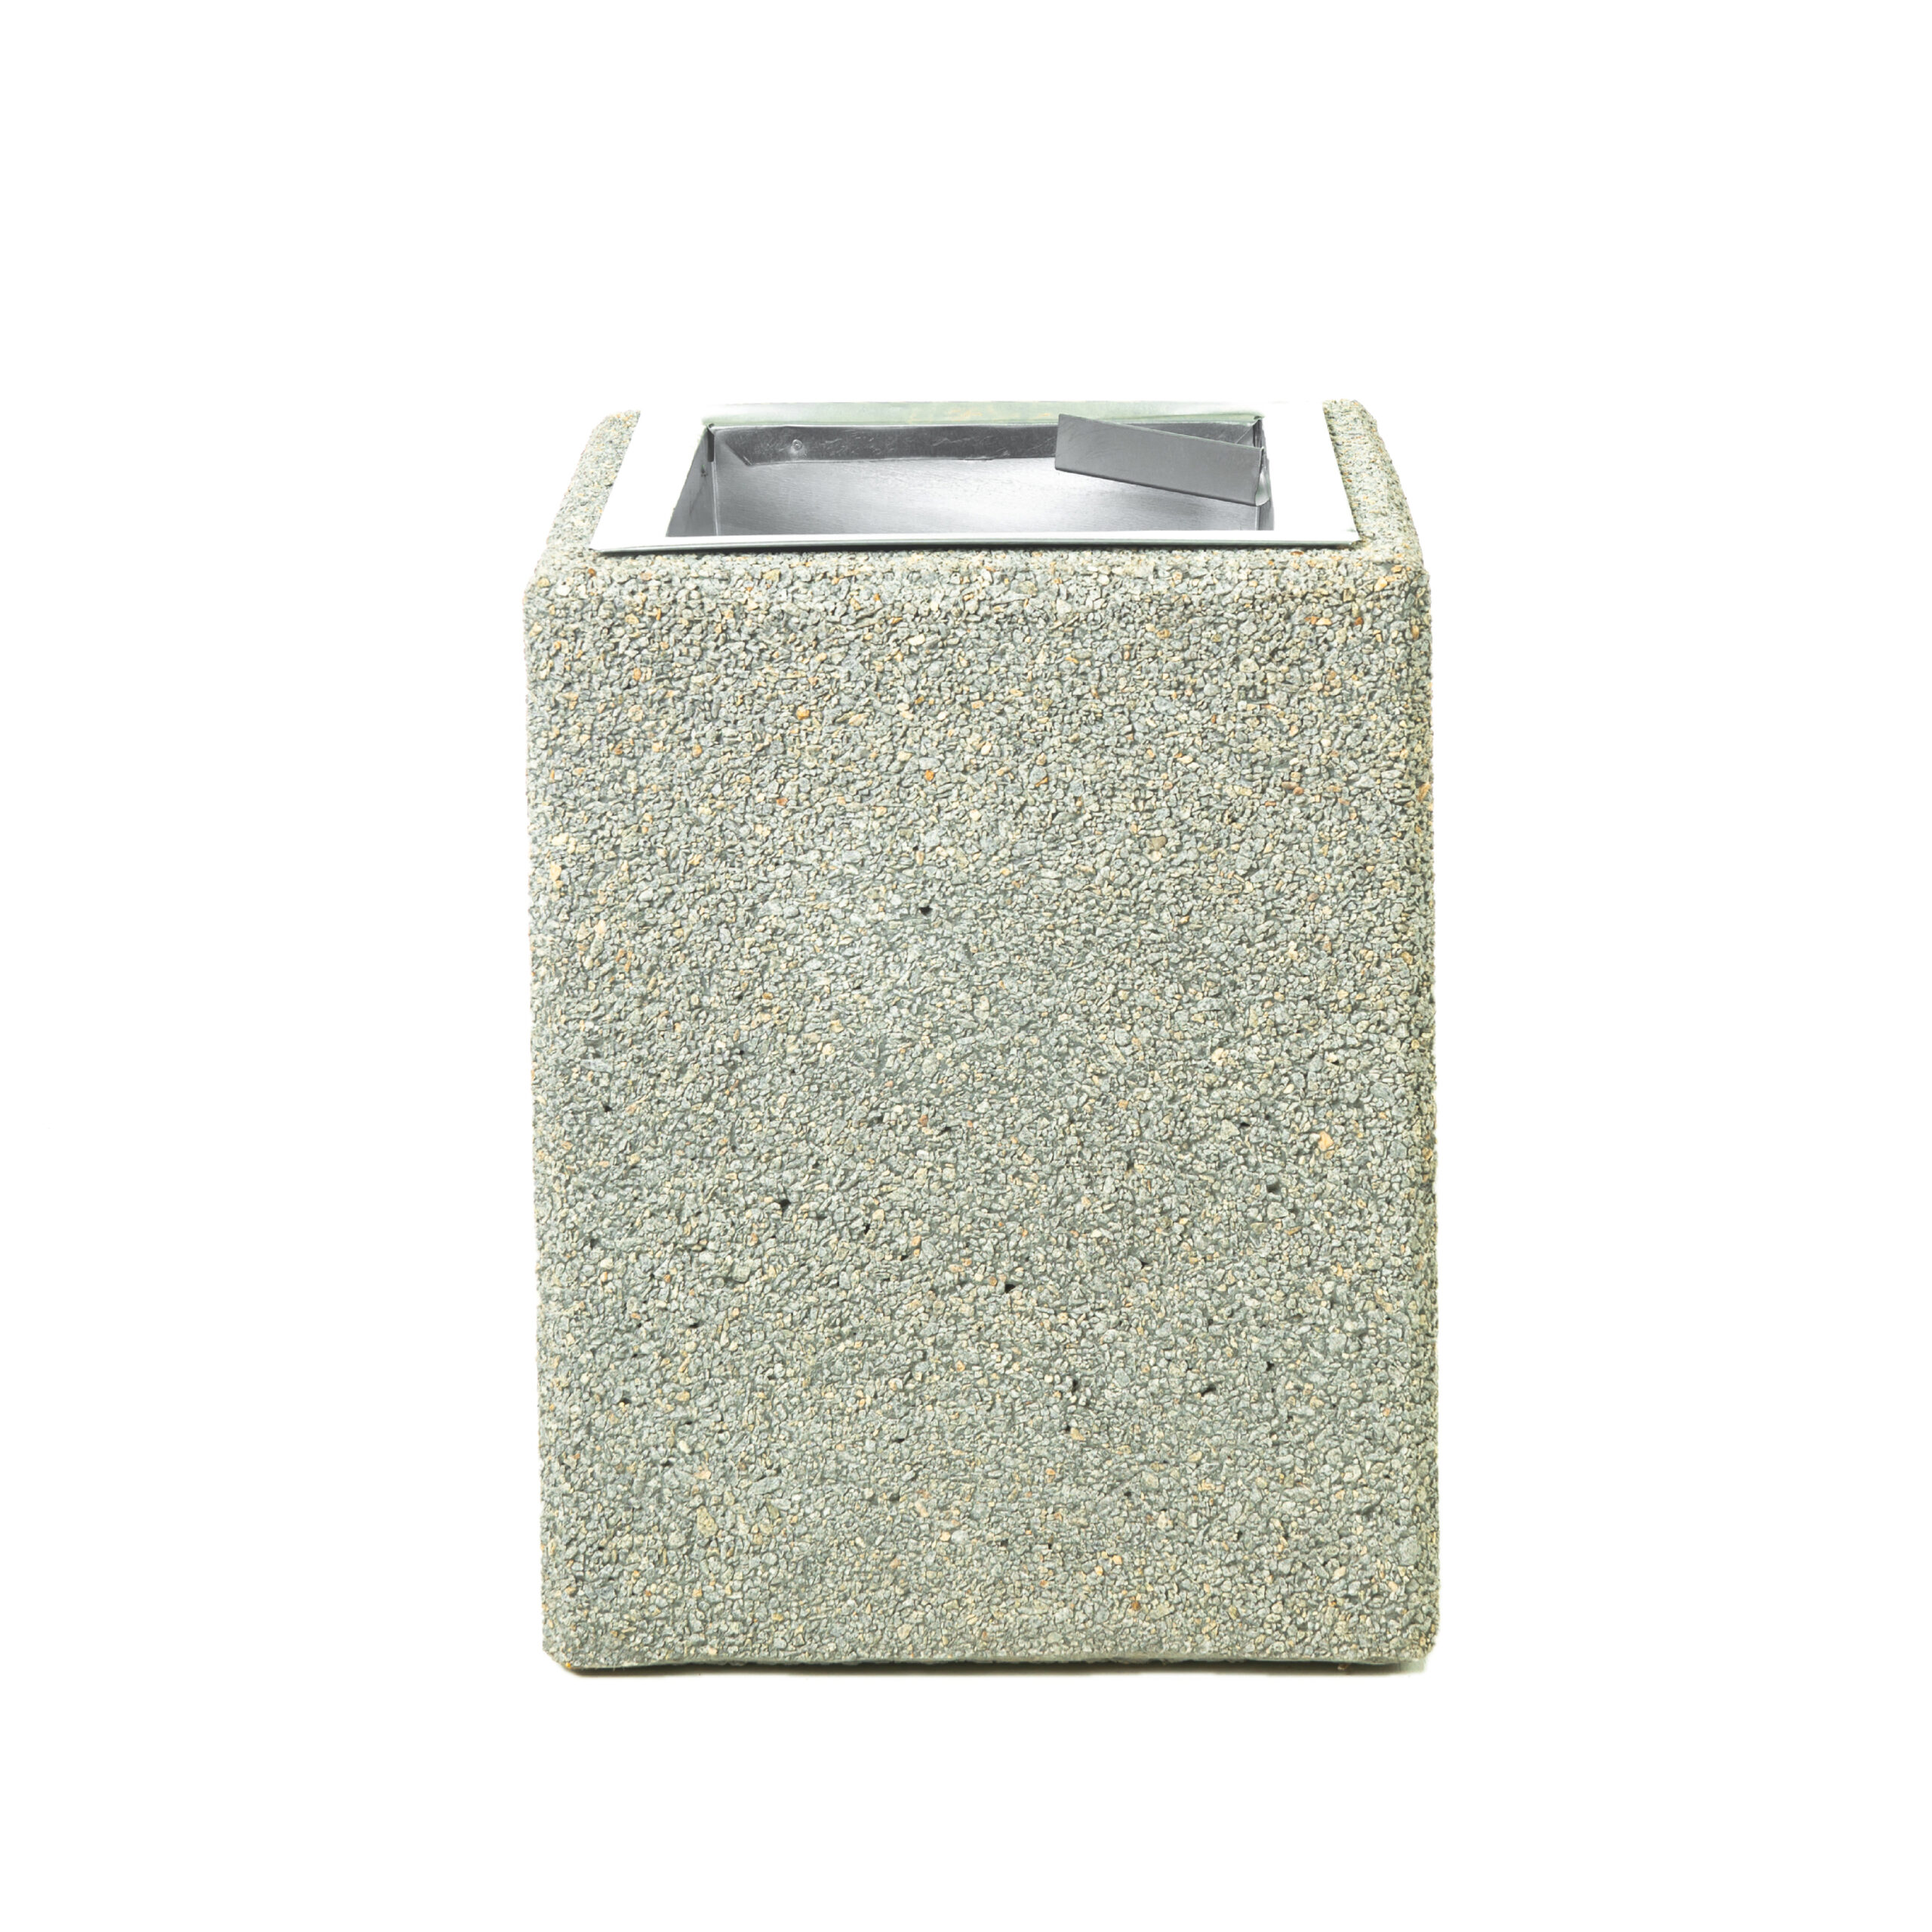 KB-03 concrete bin